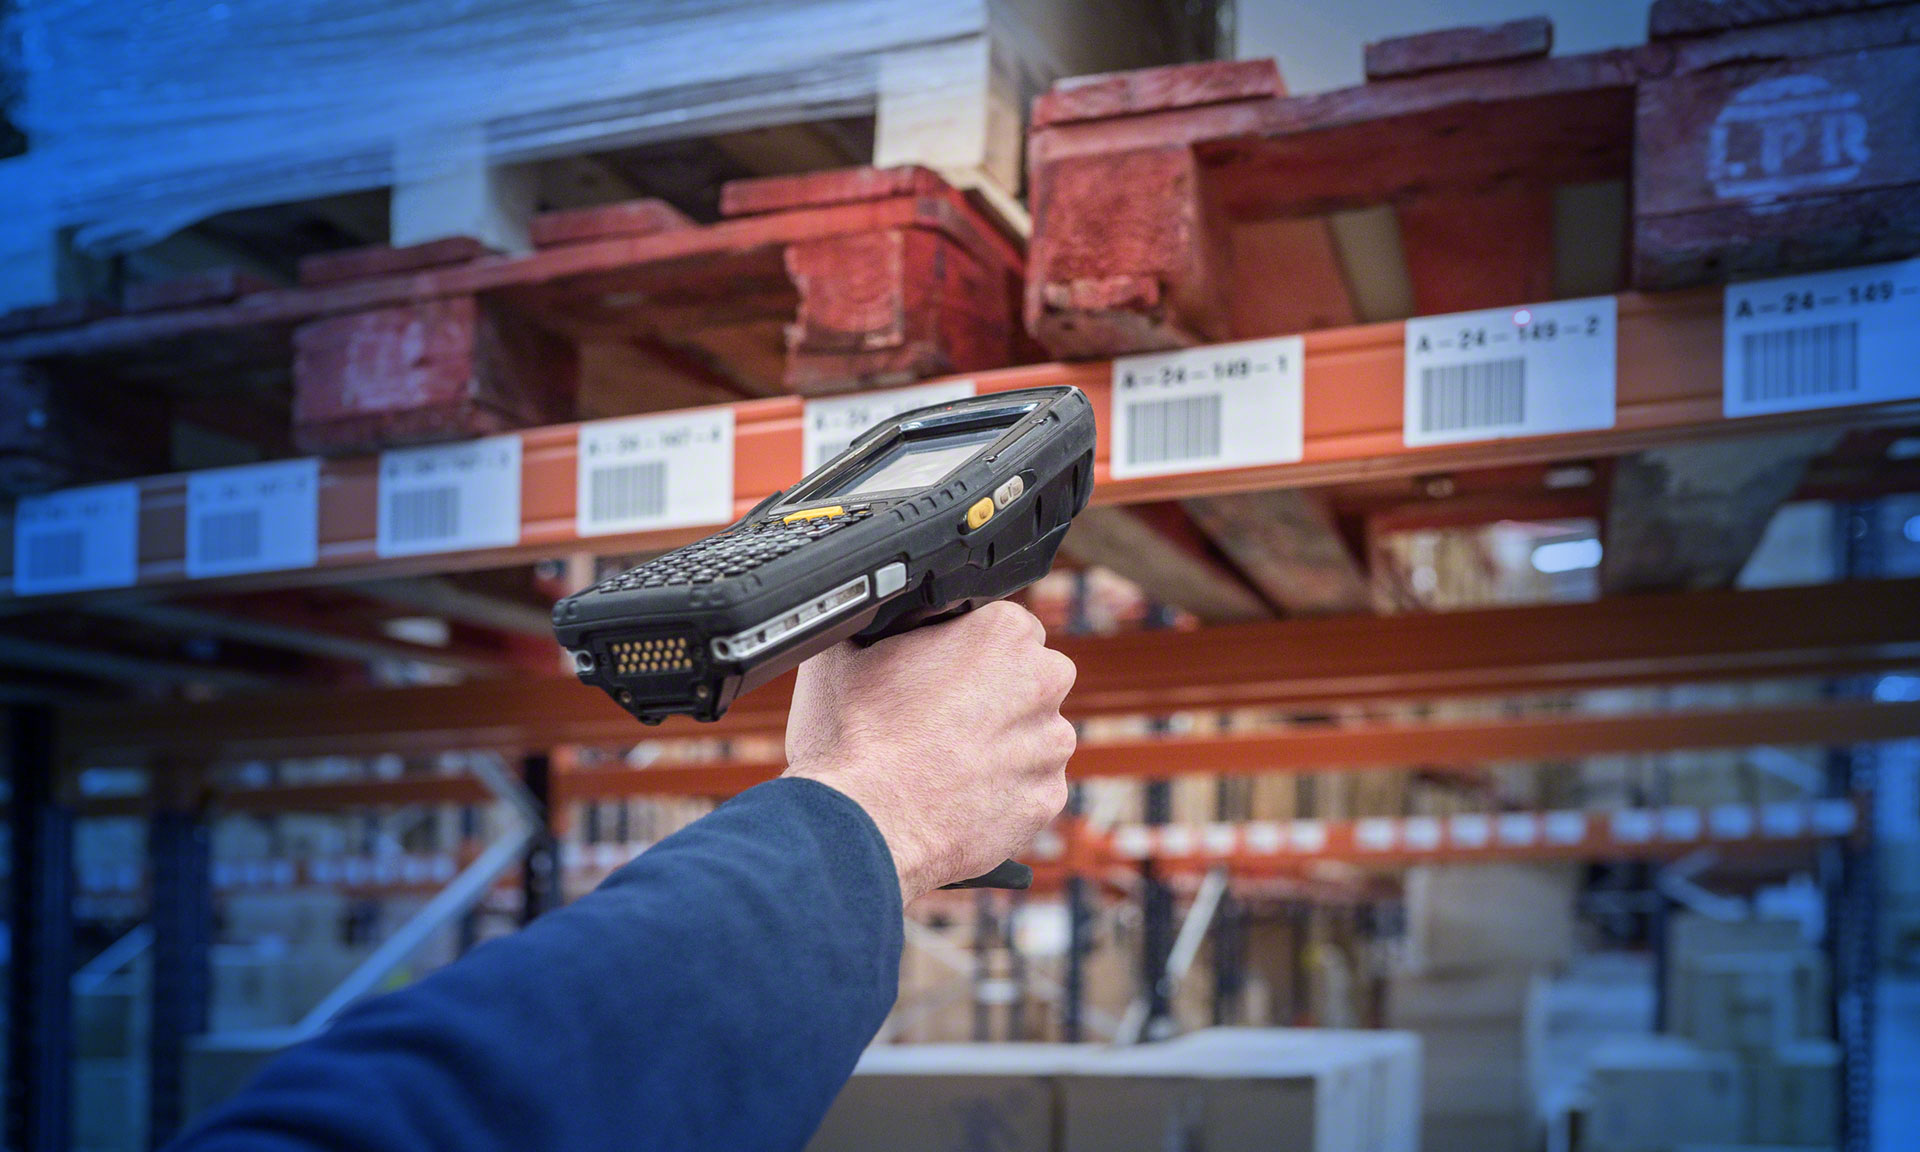 Les opérateurs utilisent des pistolets à radiofréquences pour réaliser l'inventaire dans l'entrepôt